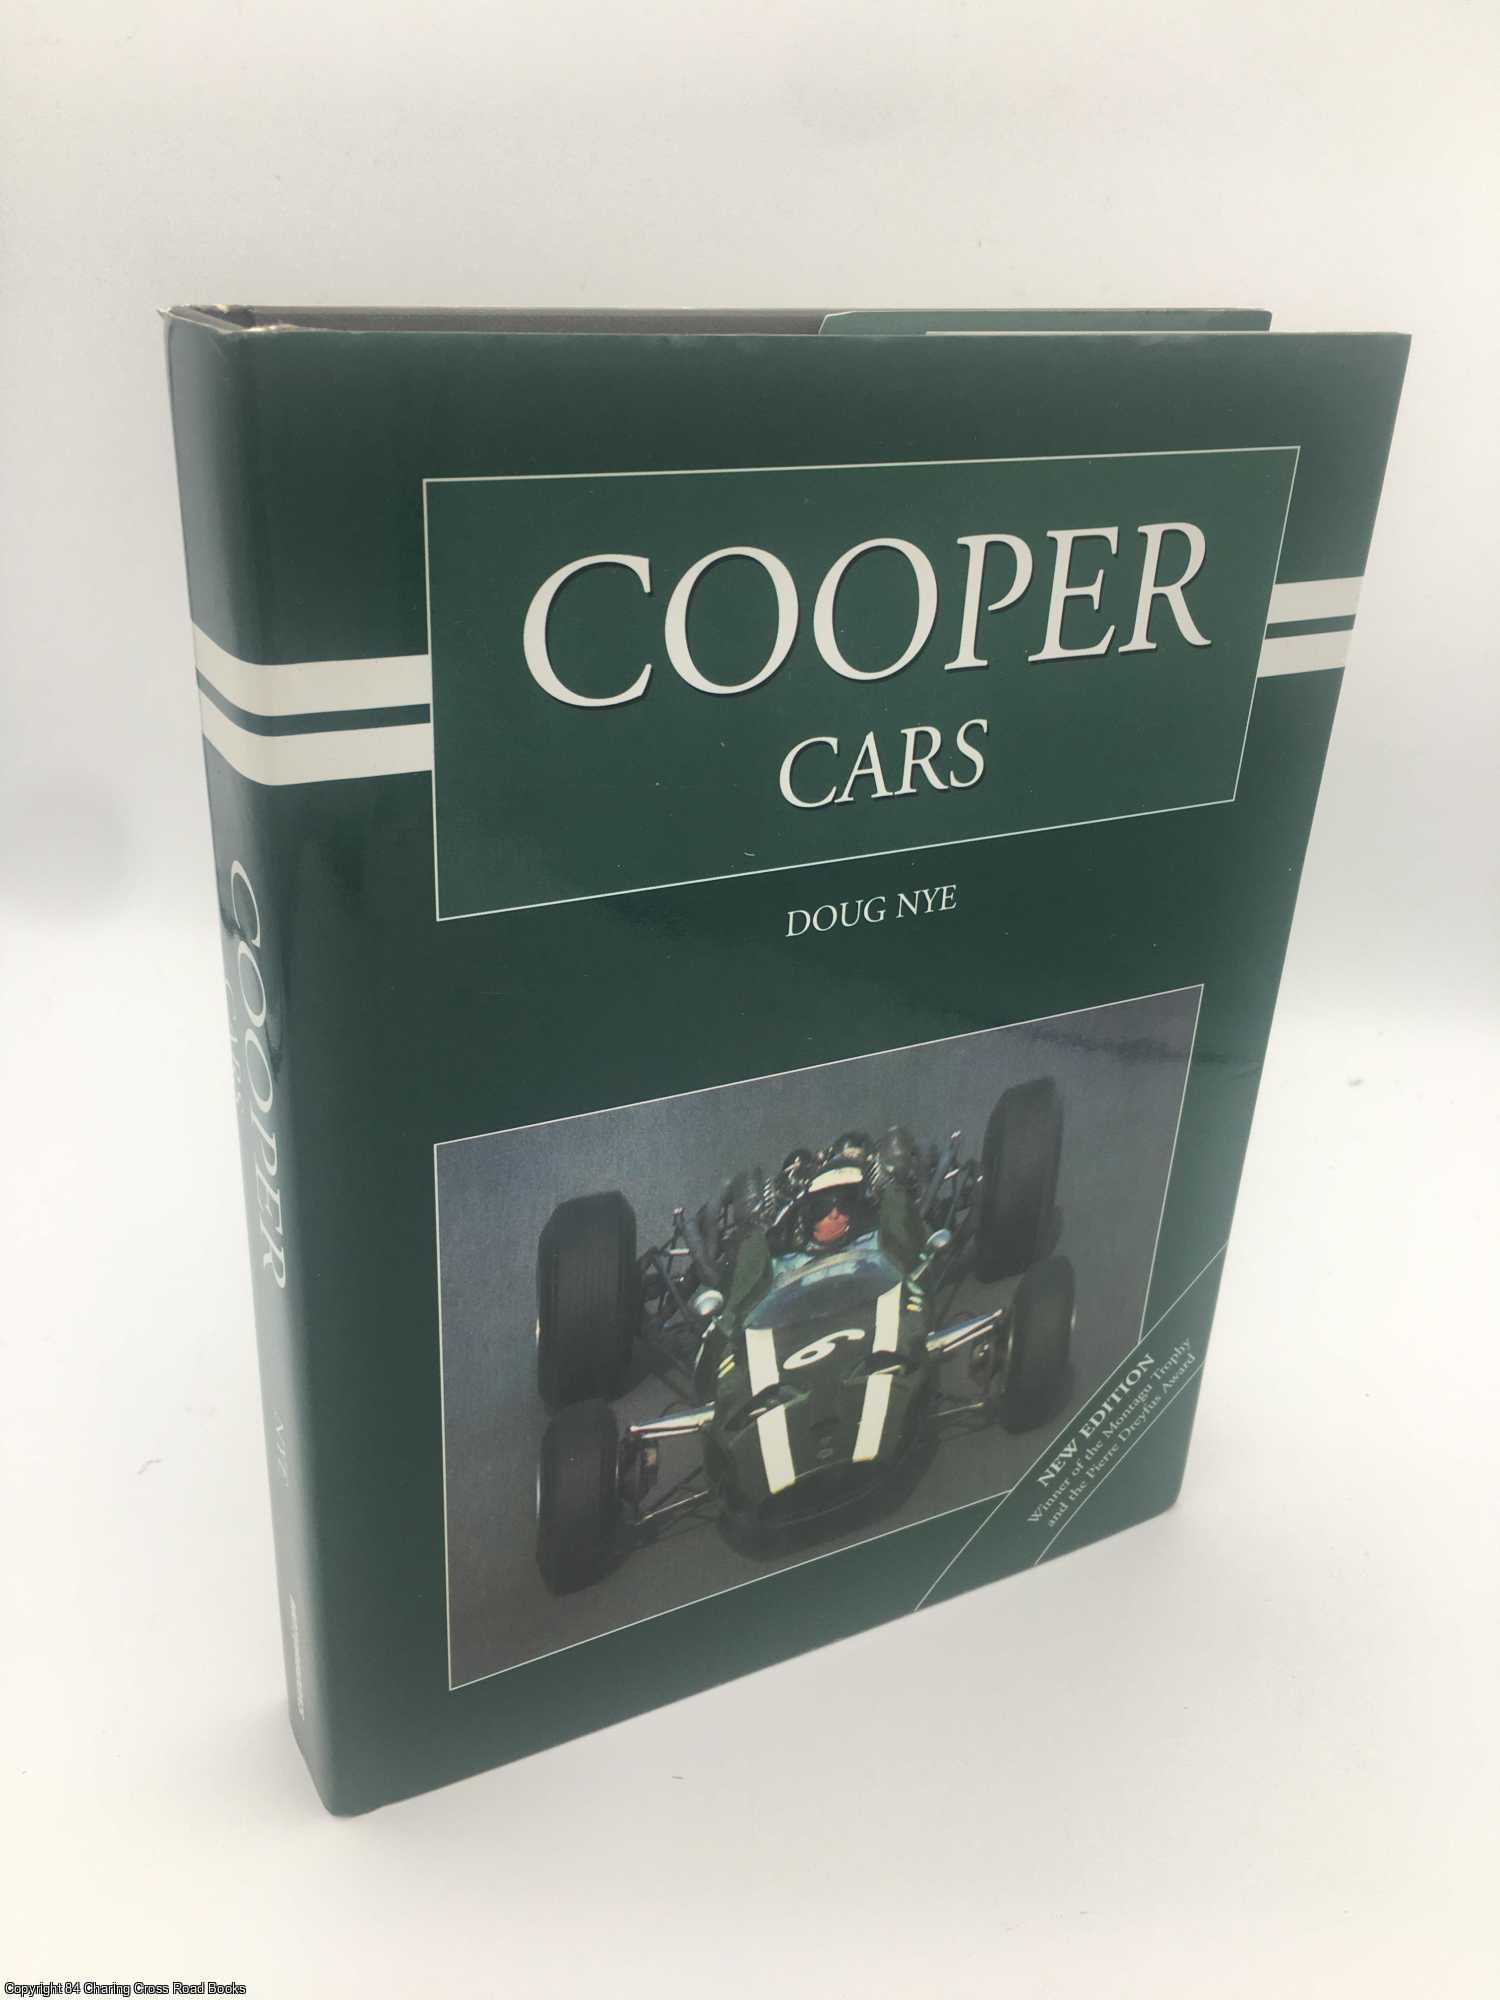 Nye, Doug - Cooper Cars